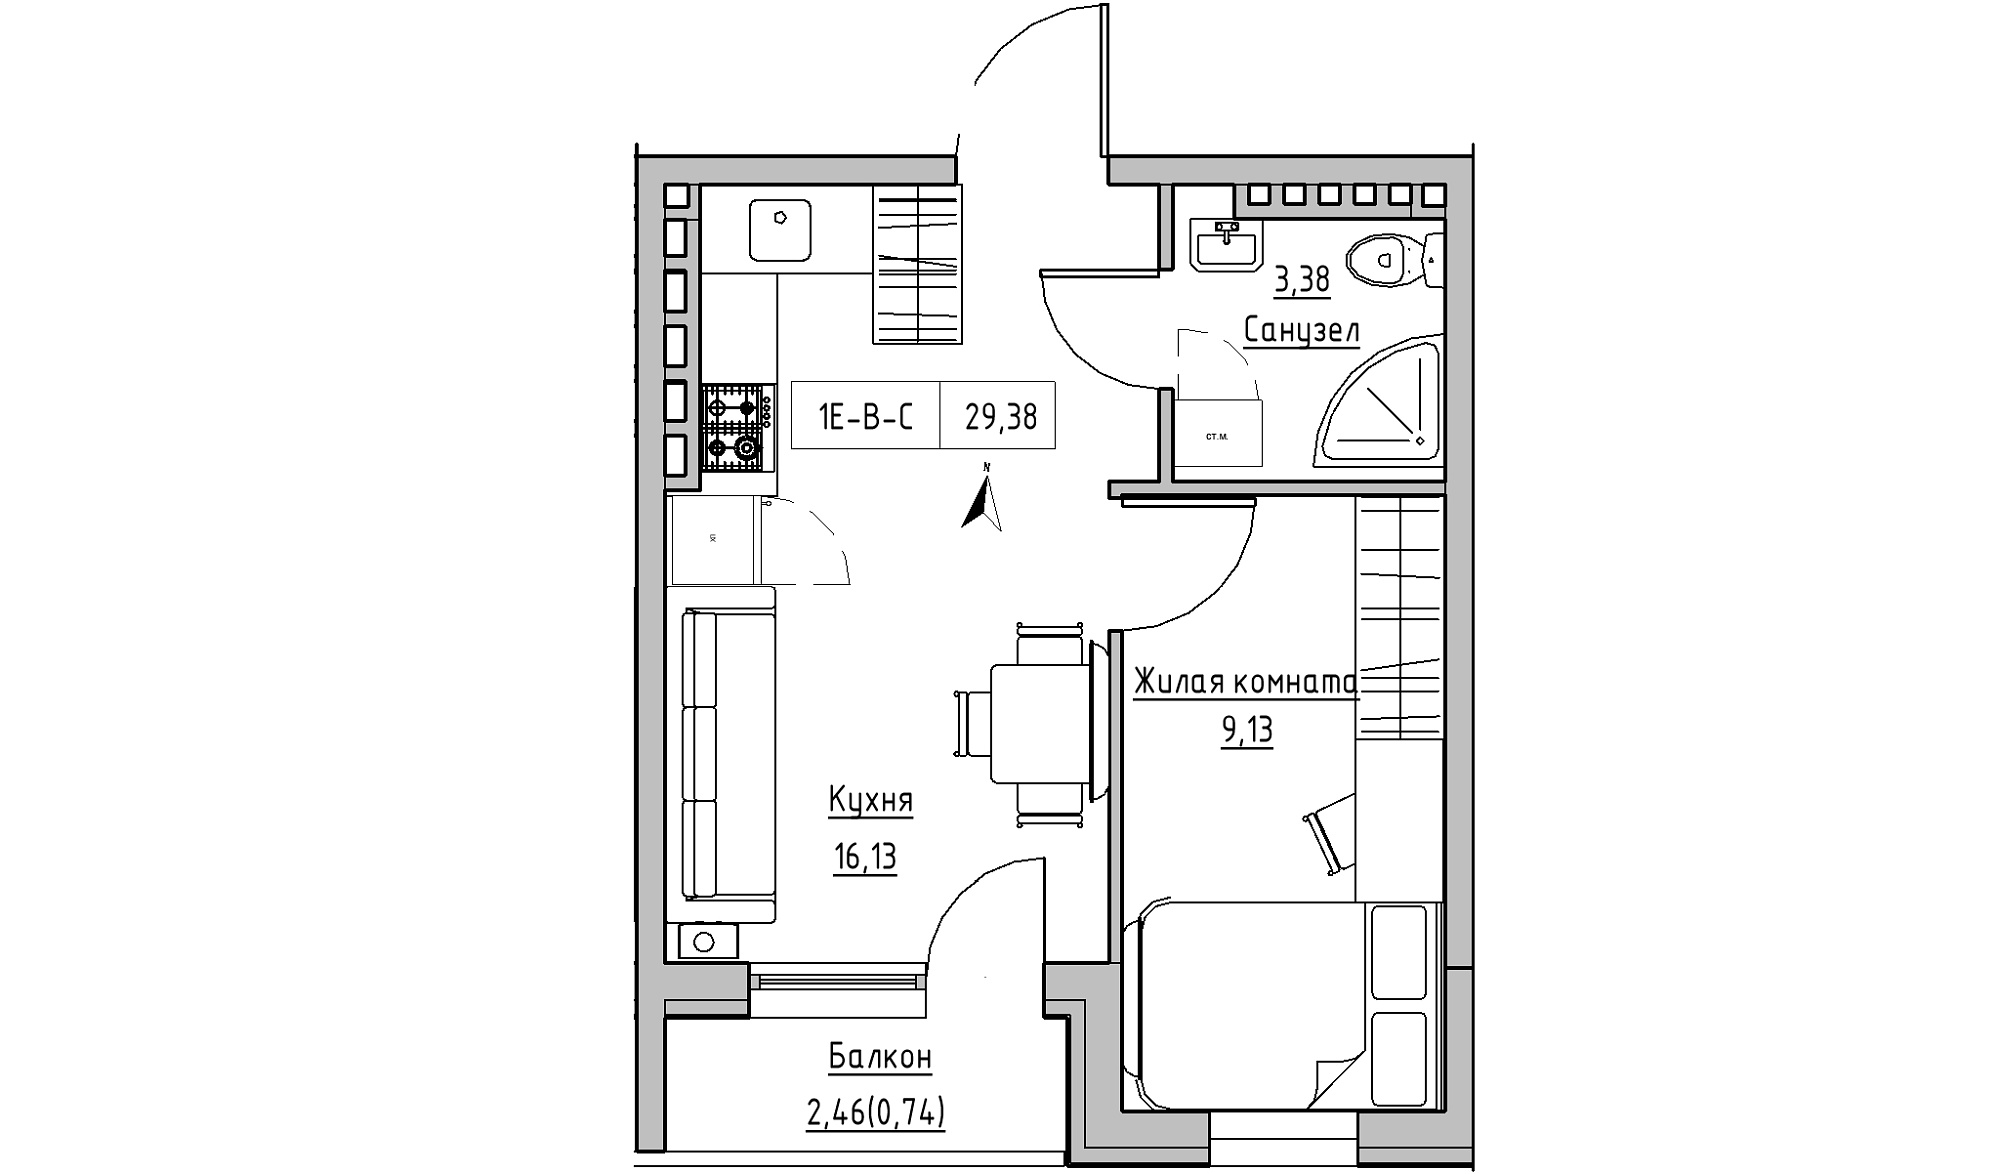 Планування 1-к квартира площею 29.38м2, KS-024-05/0007.